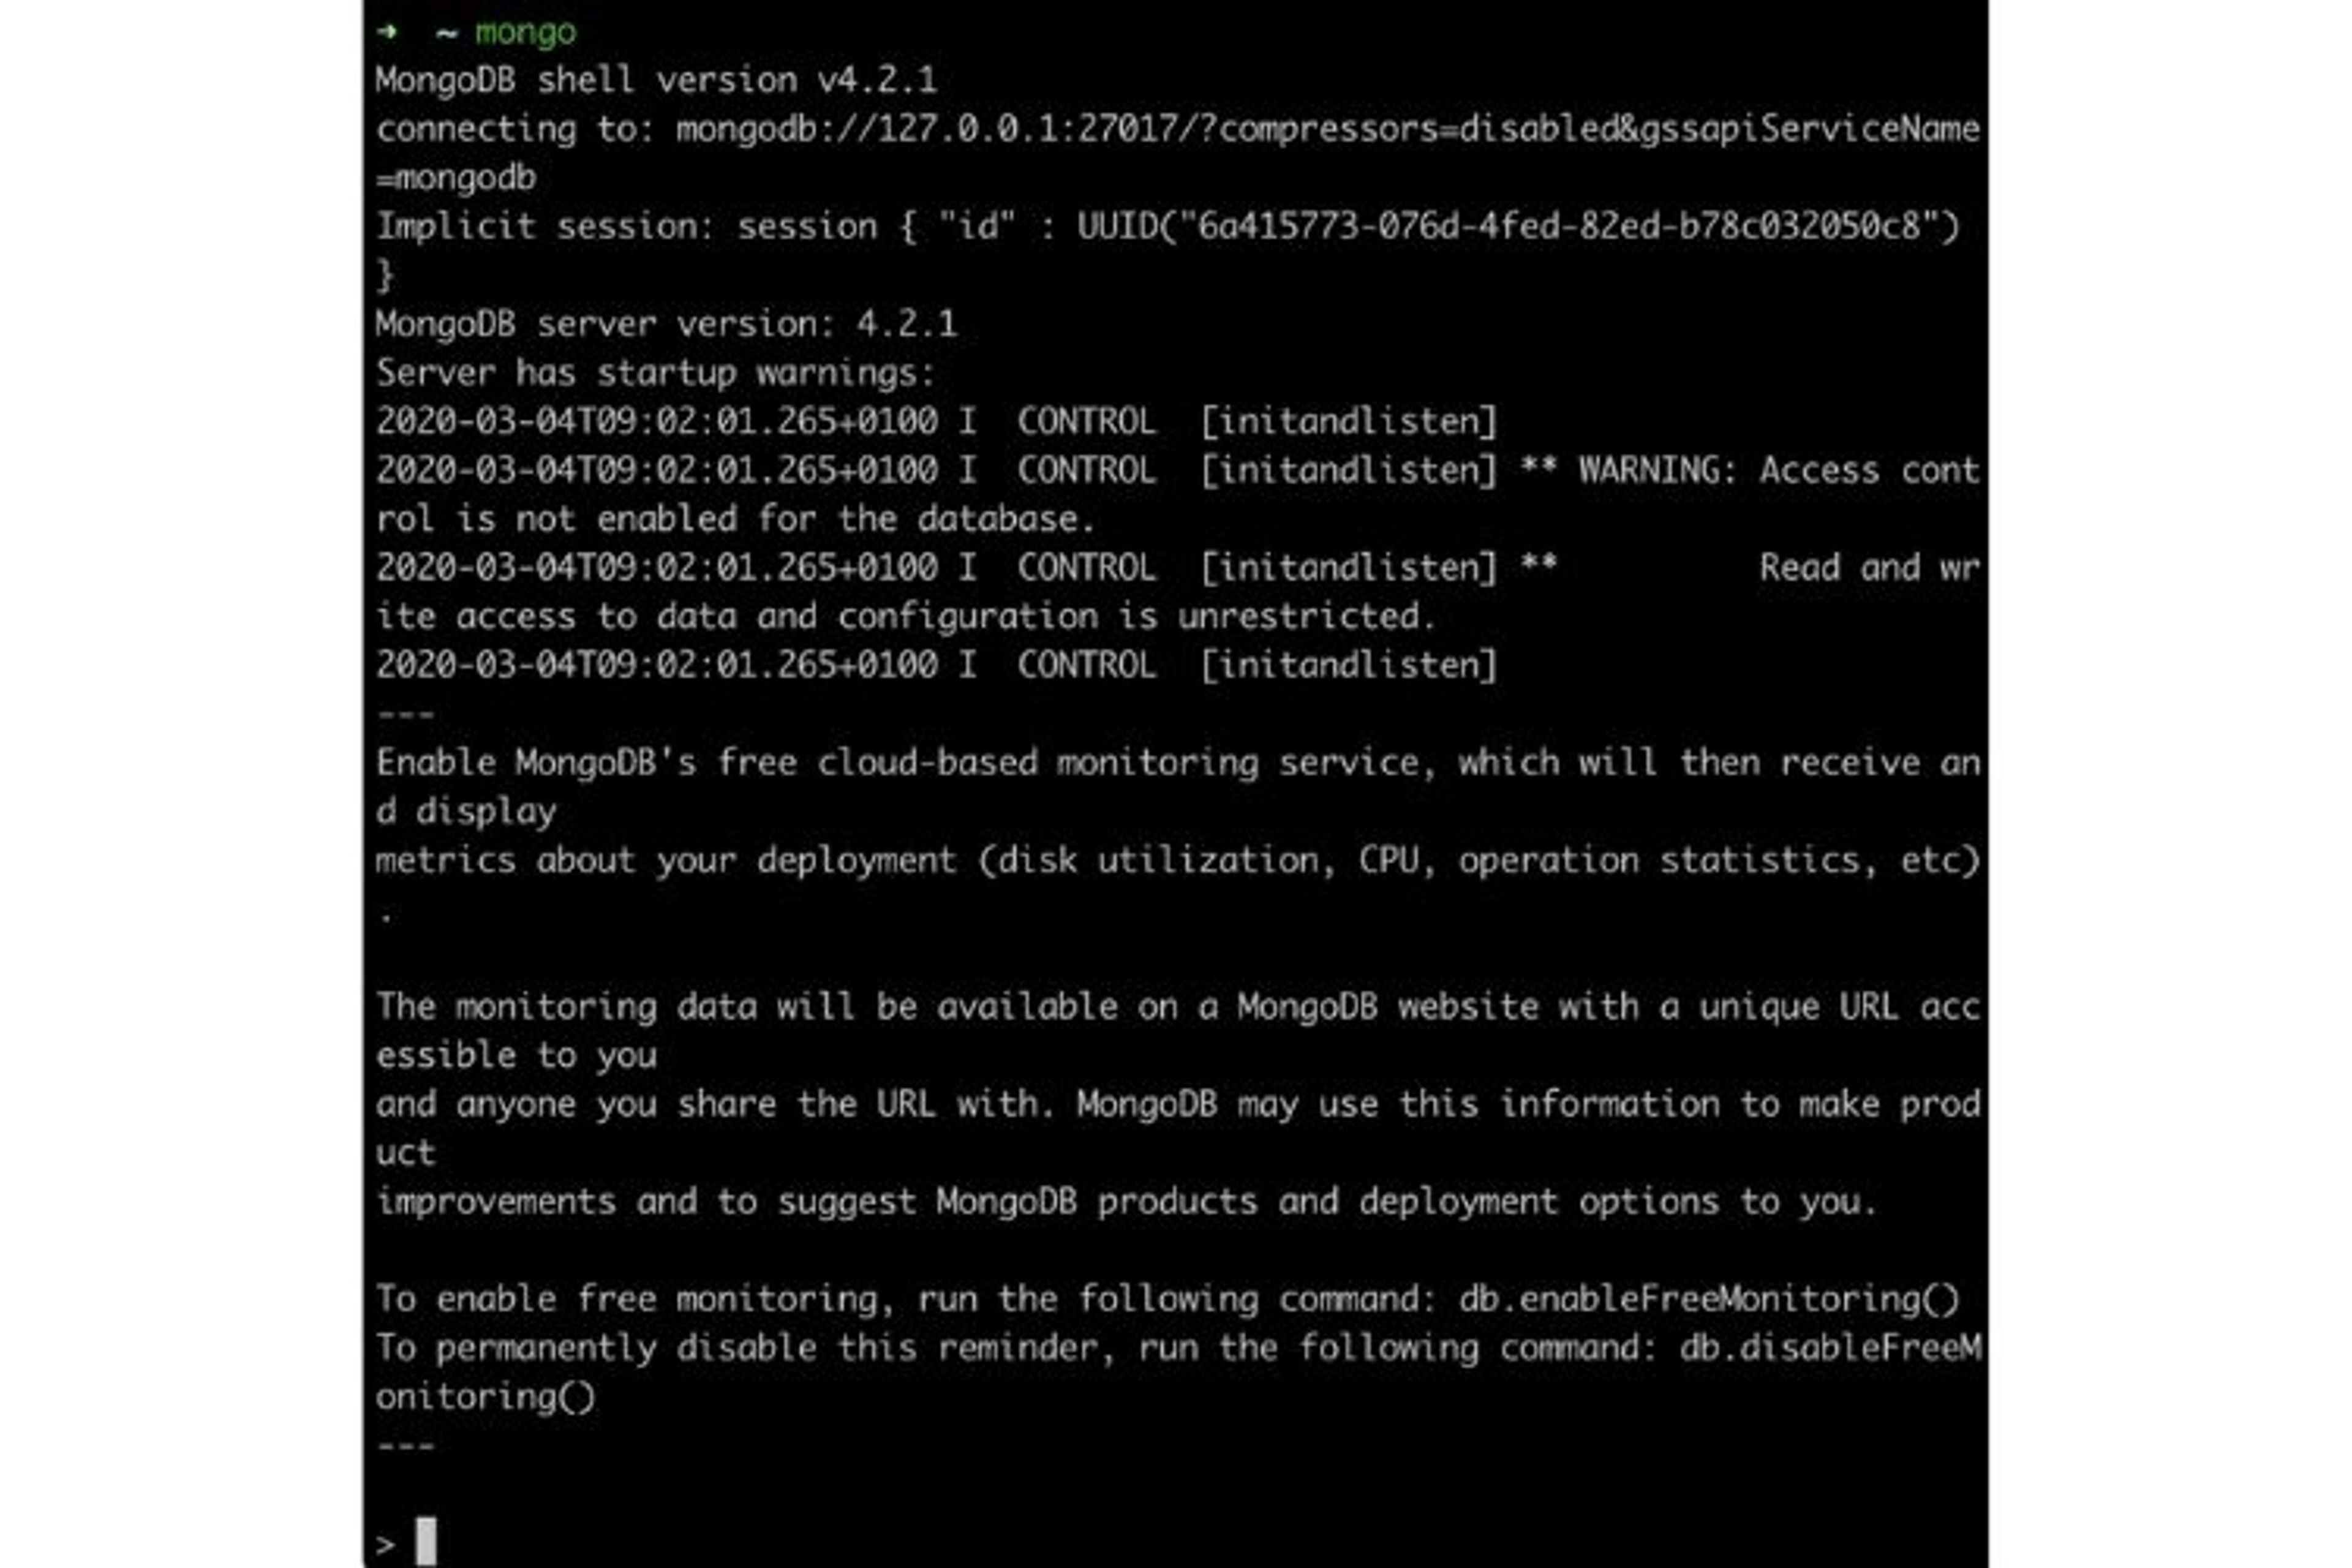 Une fois MongoDB installé, vous pouvez manipuler son serveur depuis le Mongo Shell en tapant la commande " mongo " sur votre terminal